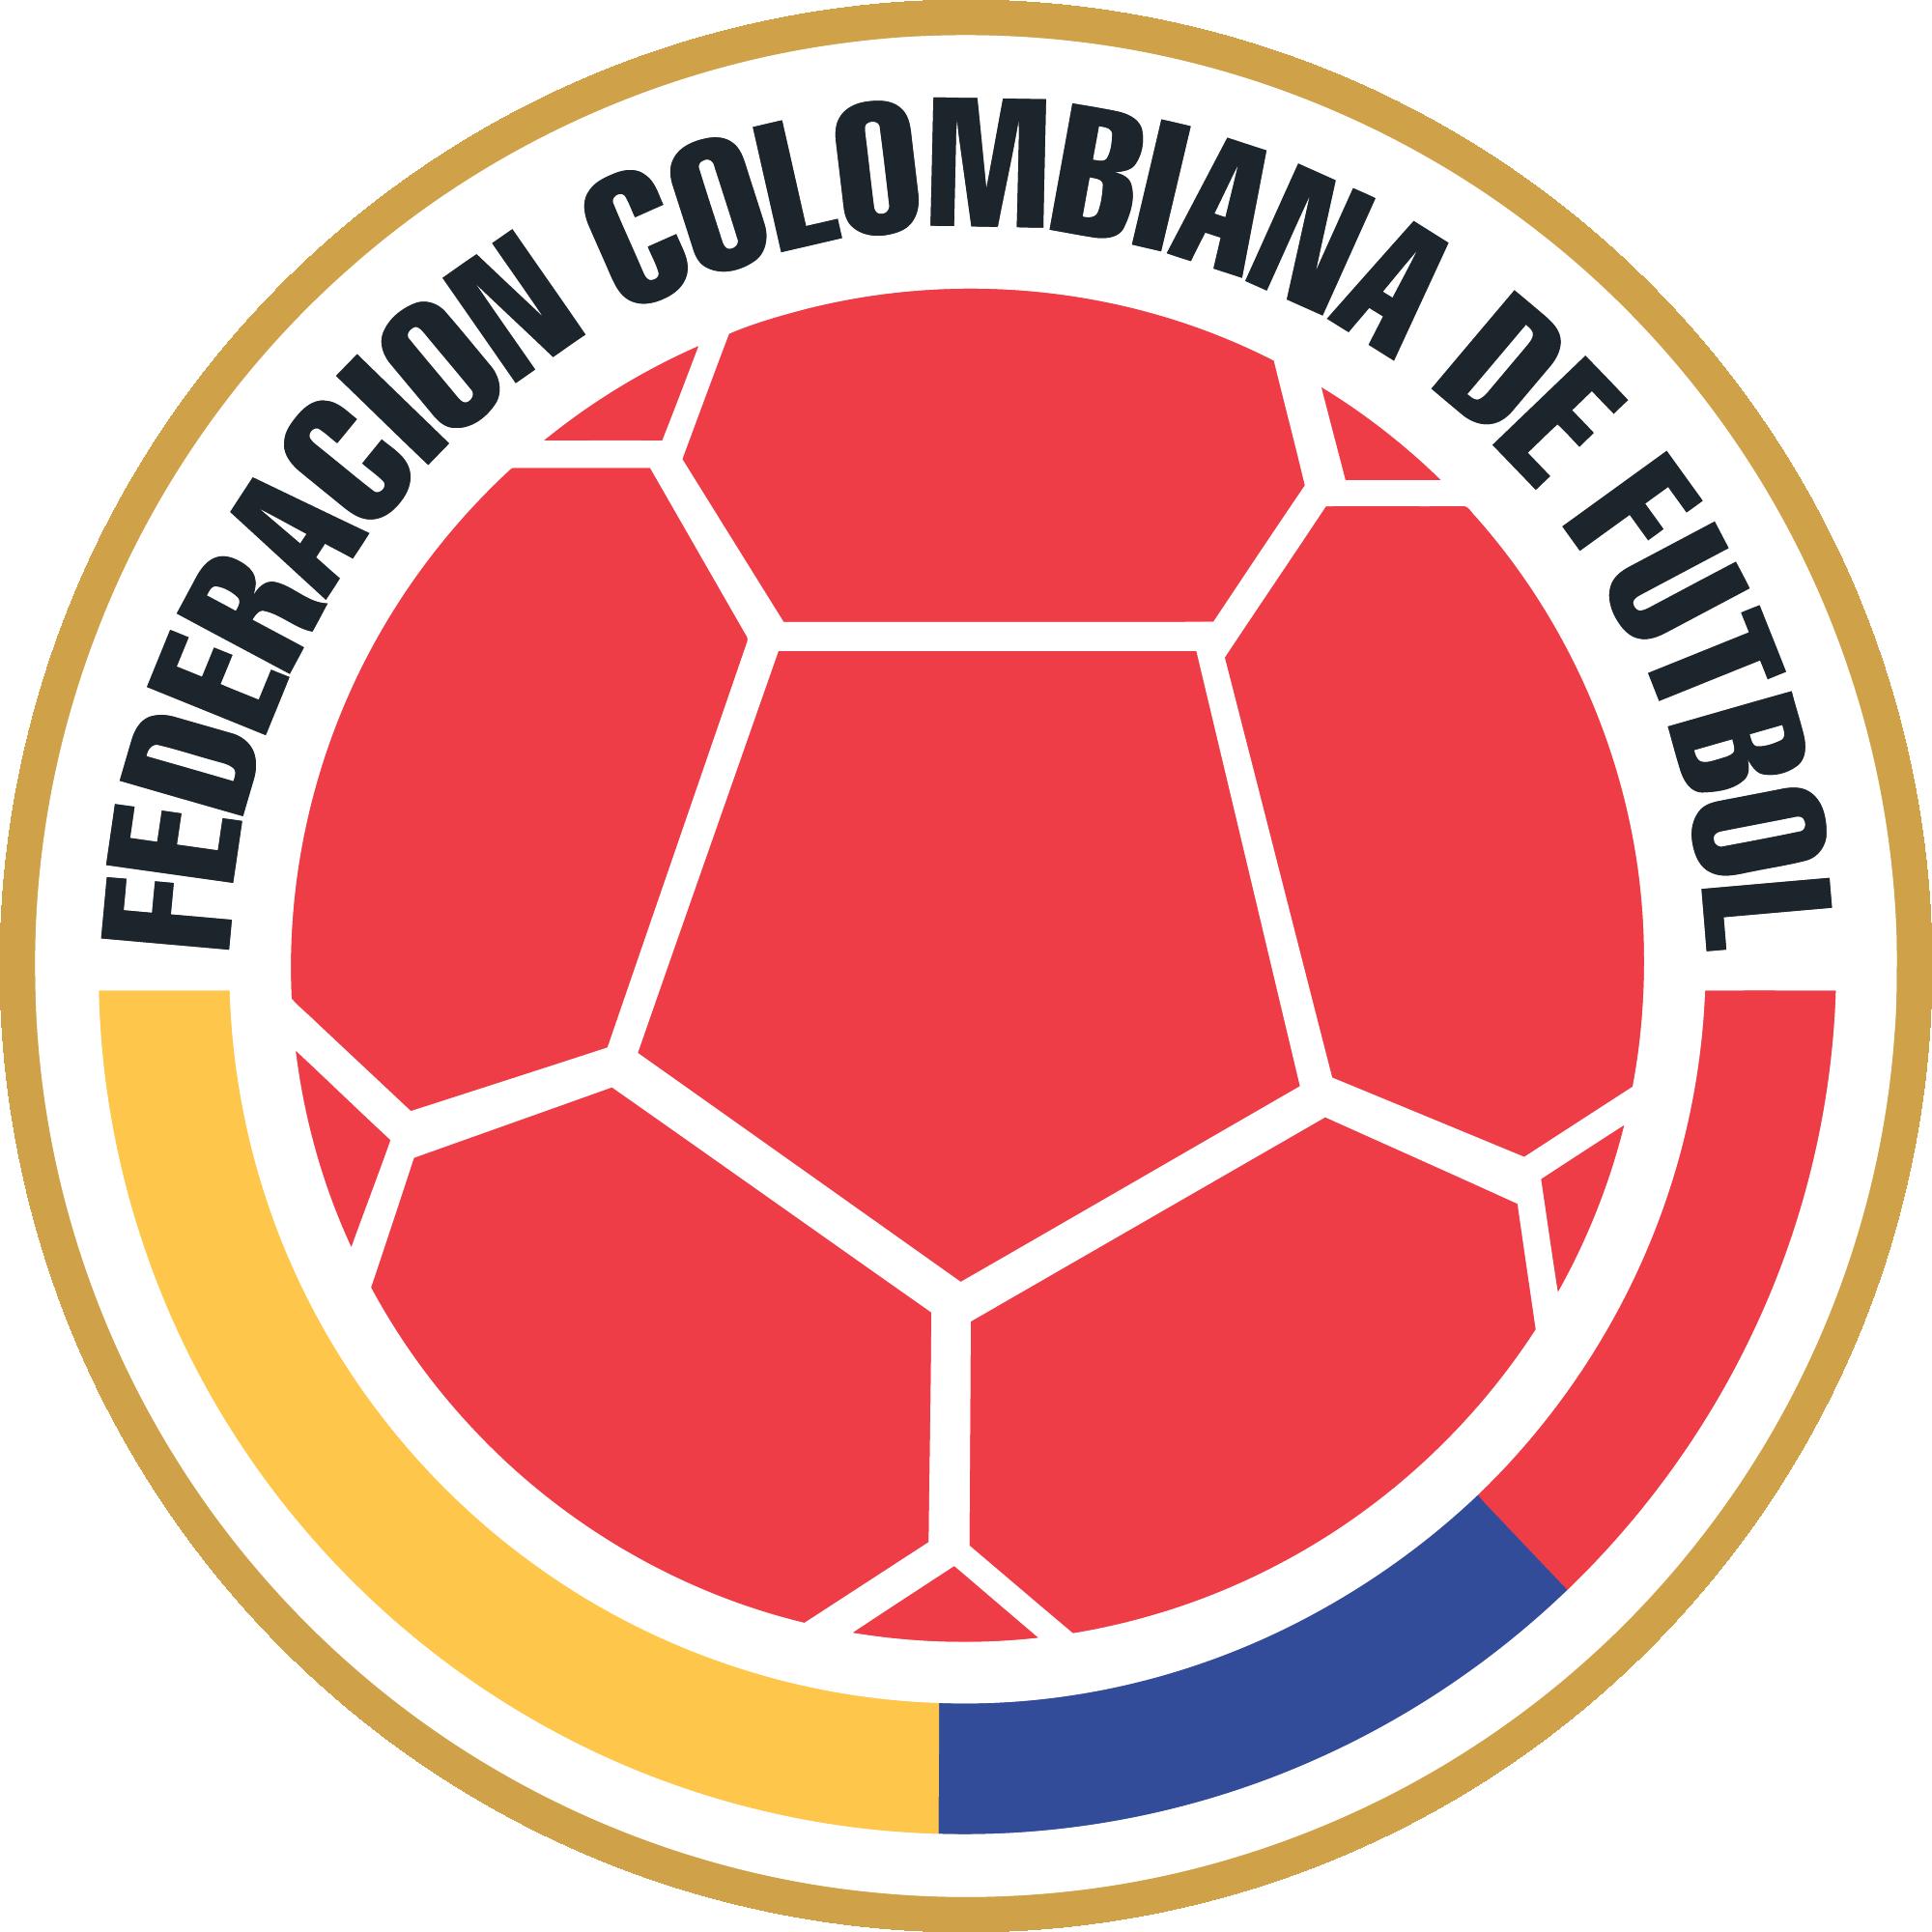 6-0, marcador que nunca había saboreado Colombia